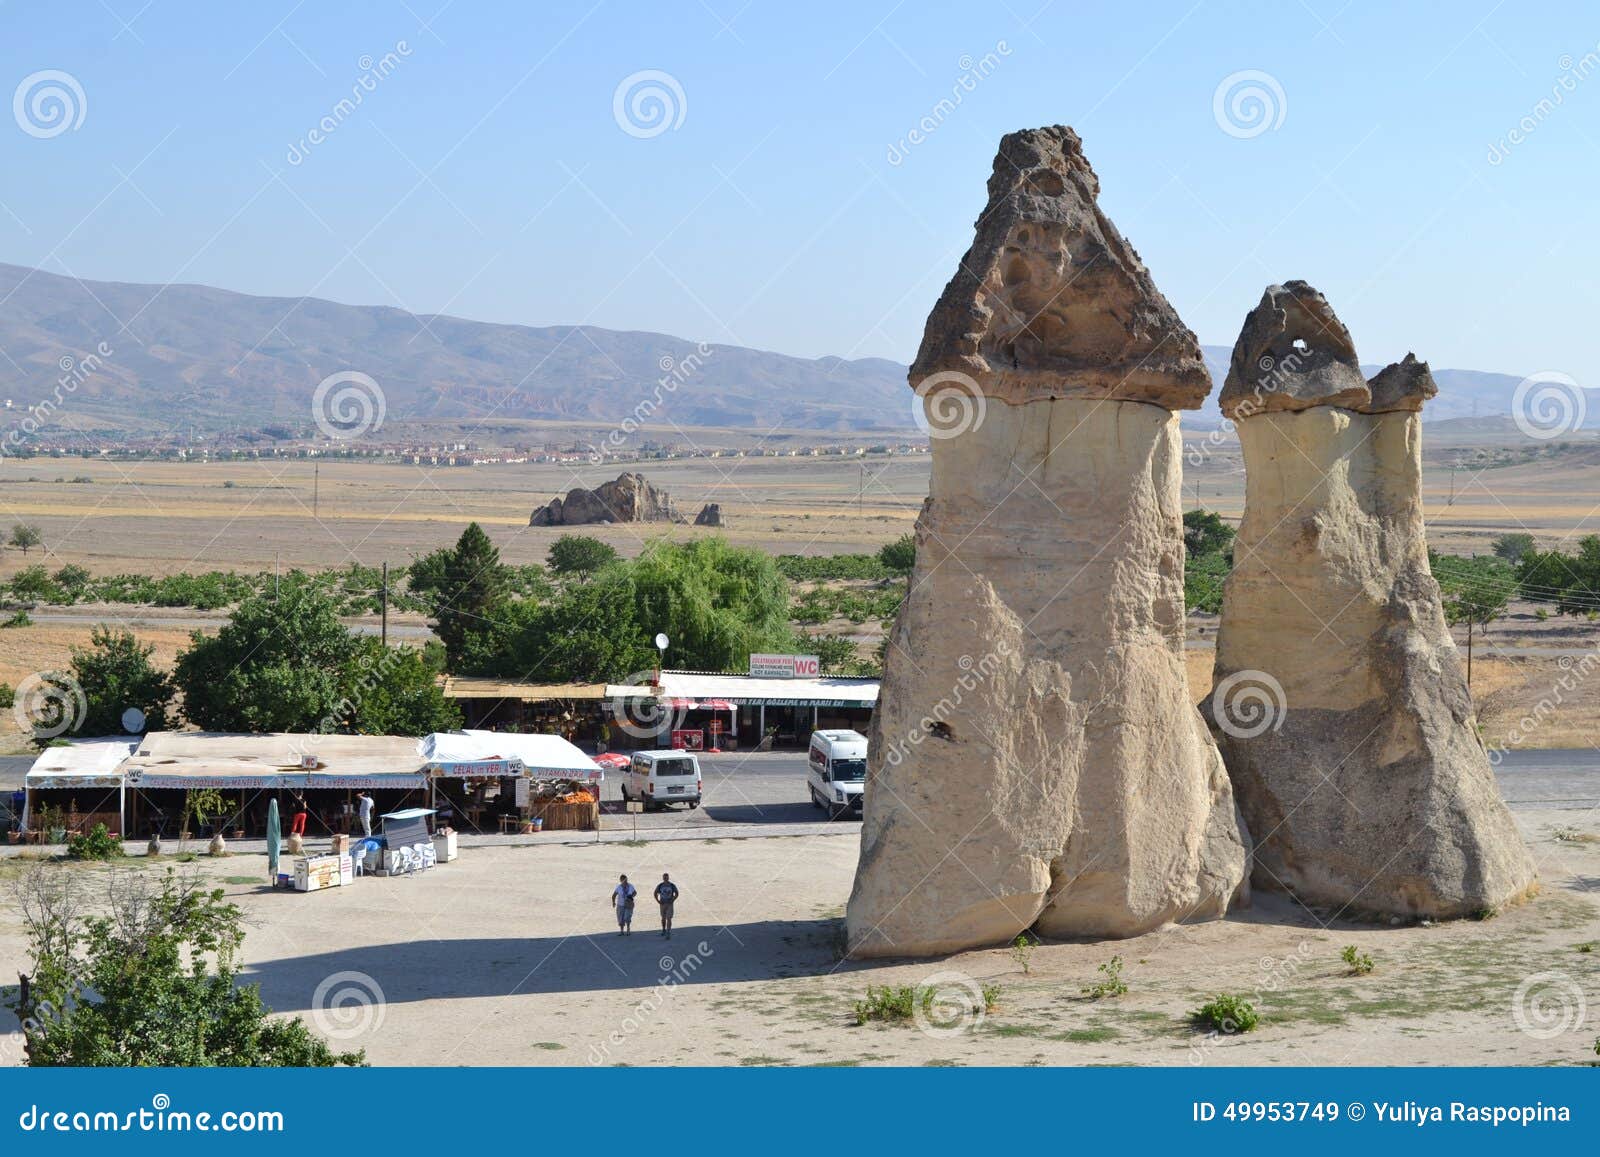 De utsmyckade champinjonhusen i den Cappadocia regionen. Naturlandskapet av den Cappadocia regionen Turkiet, unikt historiskt och kulturarv, sommartid